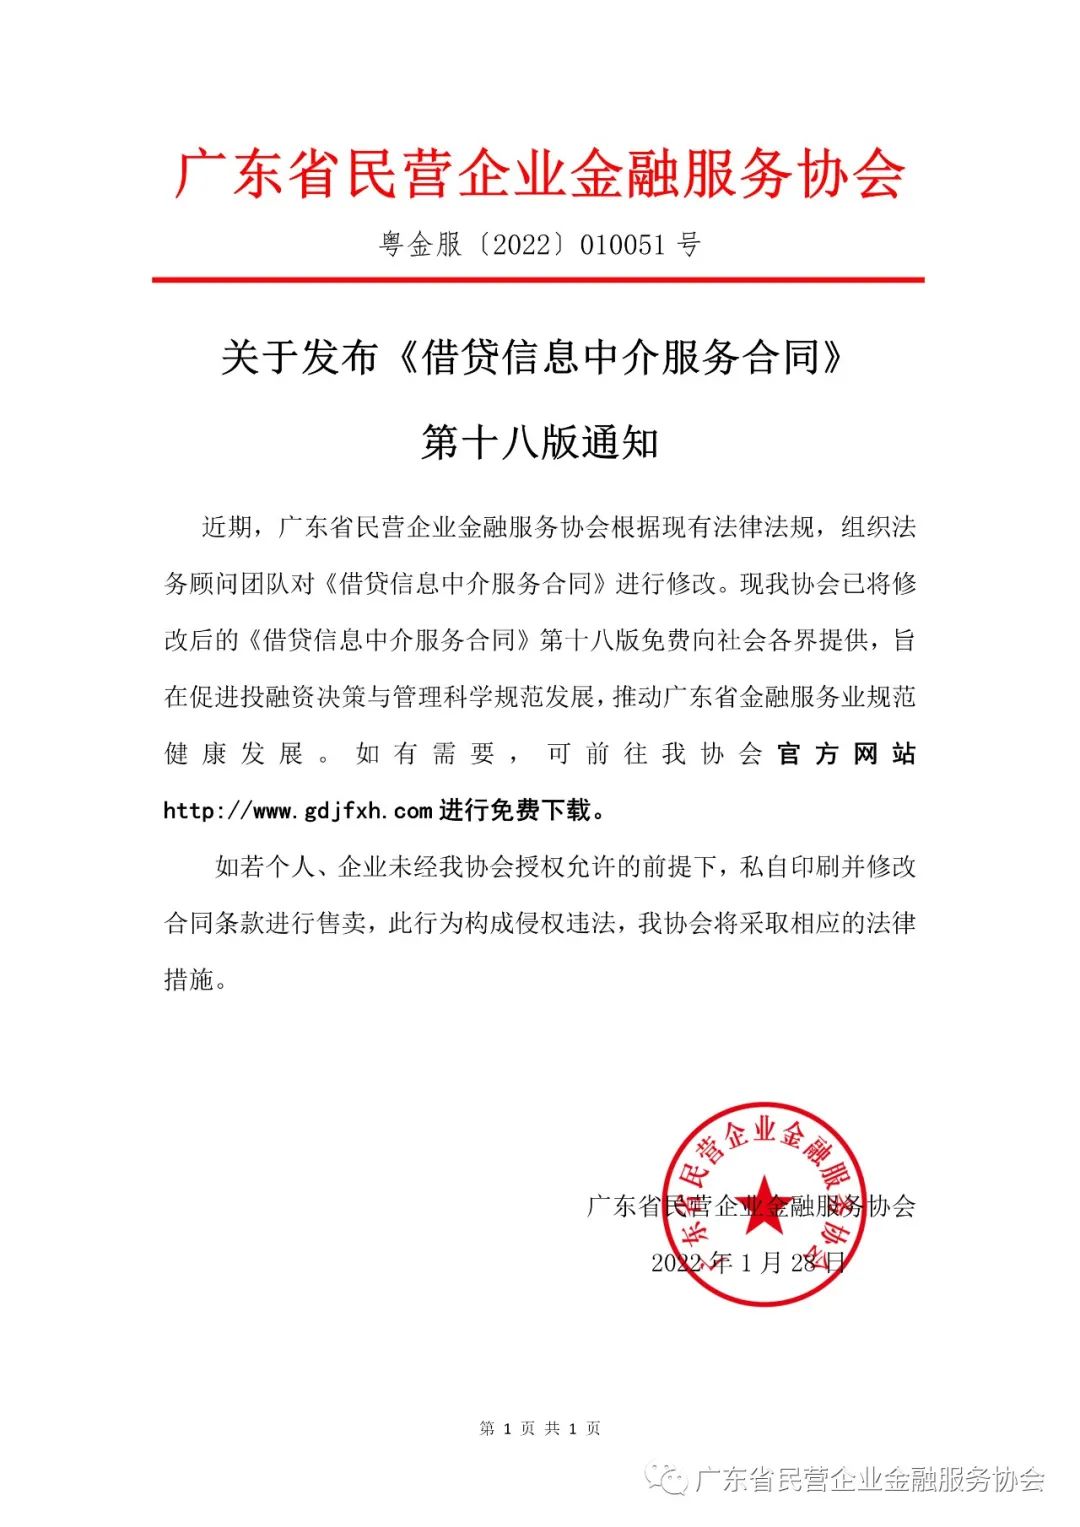 广东省民营企业金融服务协会关于发布《借贷信息中介服务合同》第十八版通知